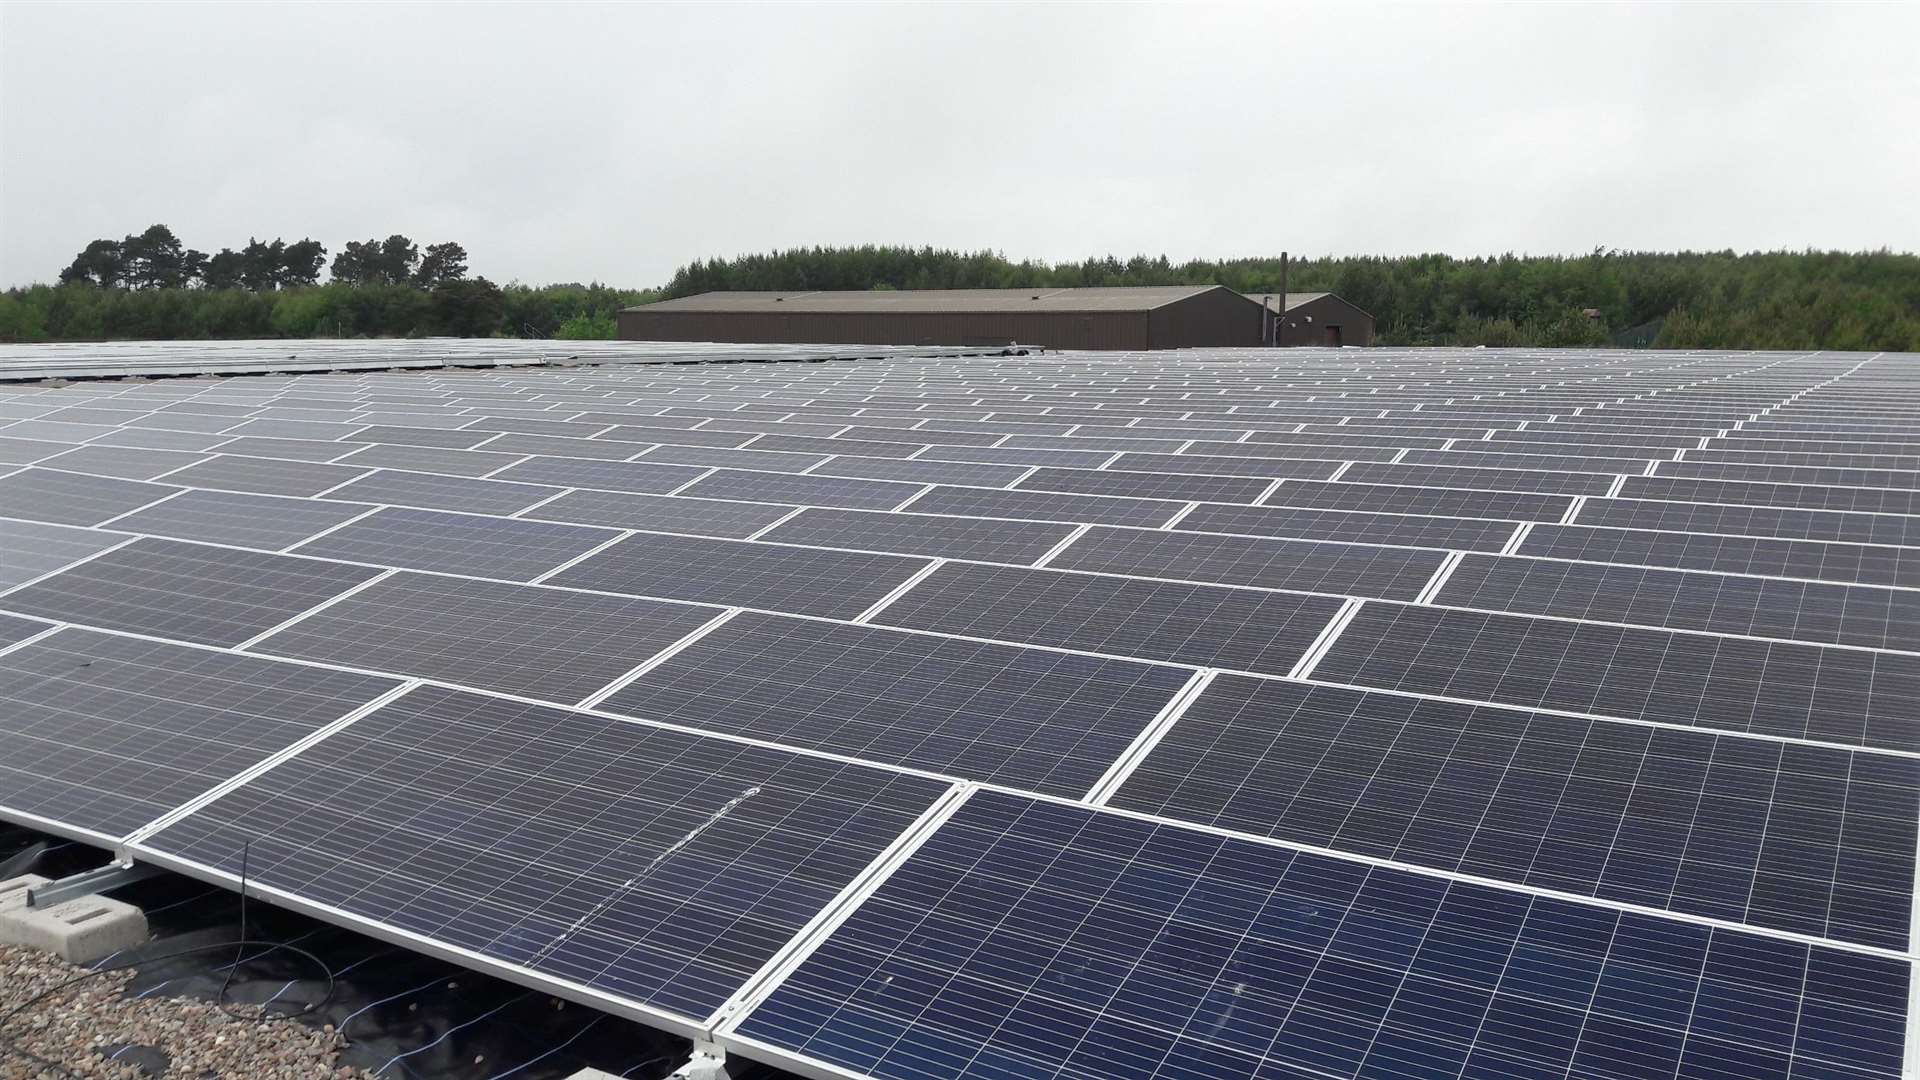 Solar panels at Loch Ashie.